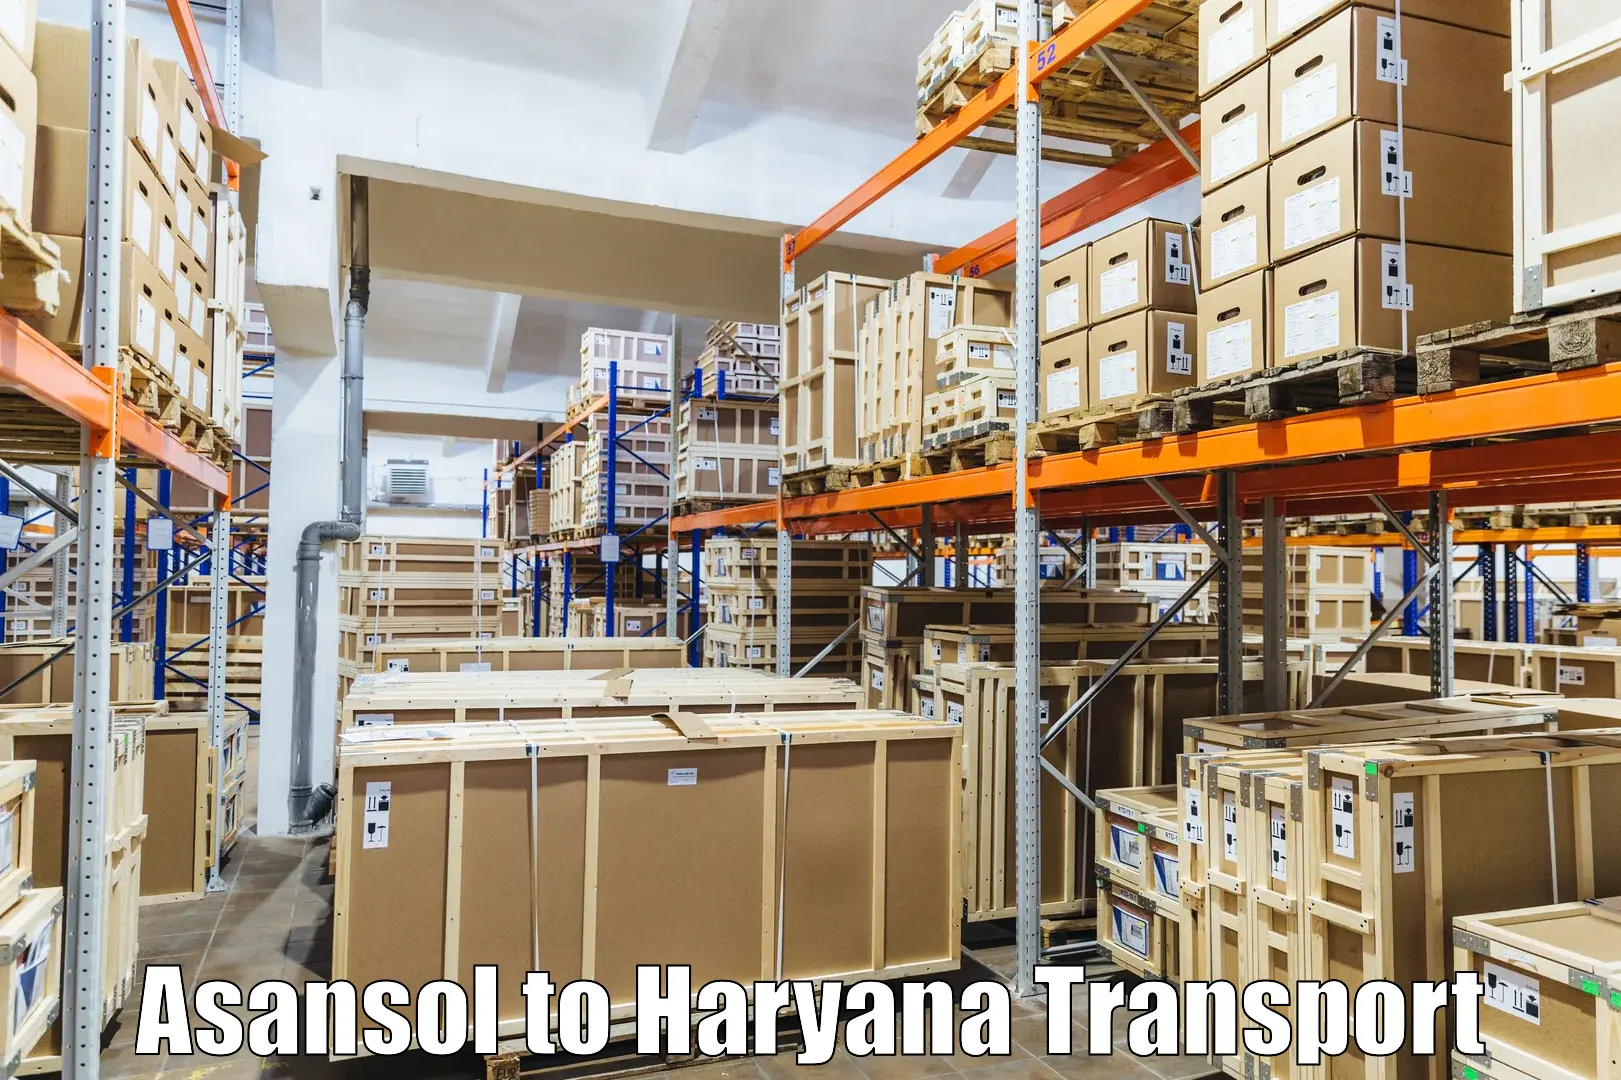 Transport in sharing Asansol to NCR Haryana